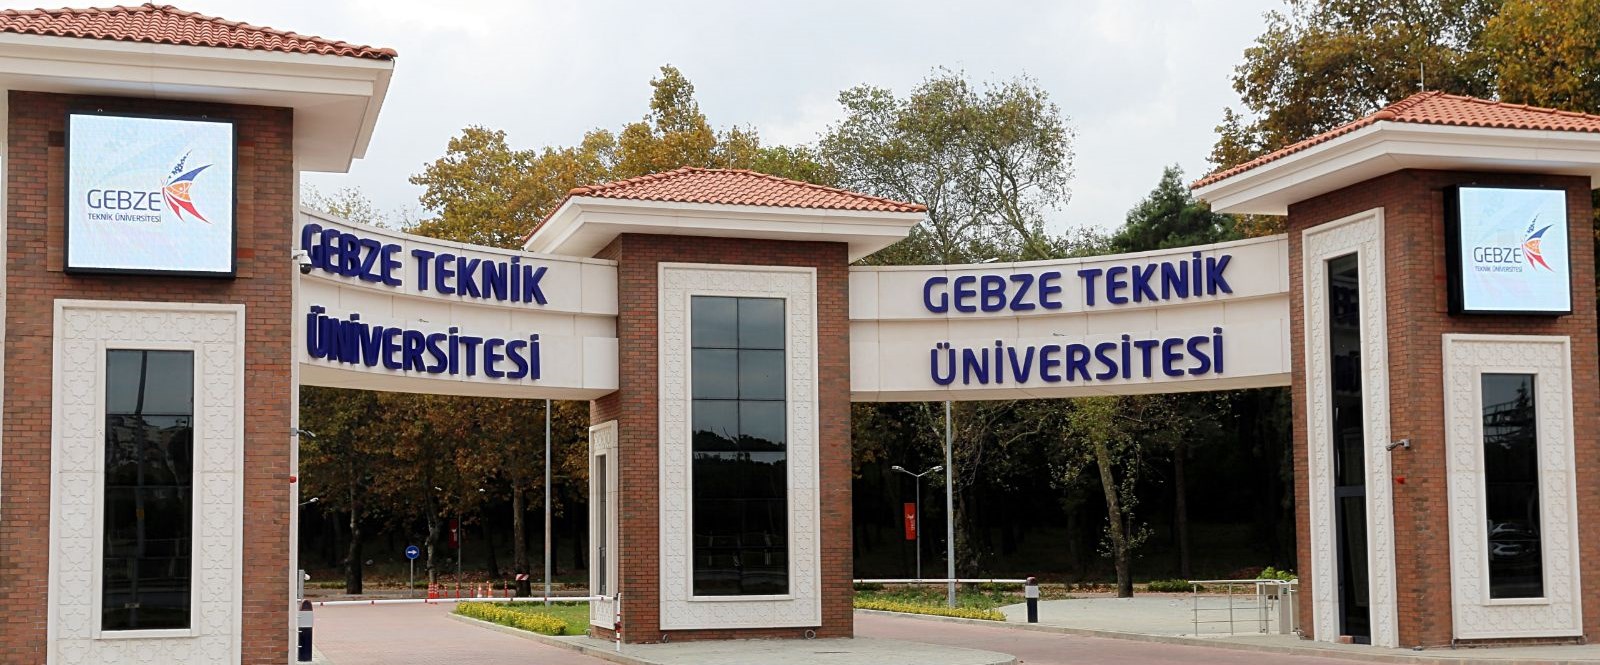 Gebze Teknik Üniversitesi ‘dünyanın en iyileri’ arasında gösterildi